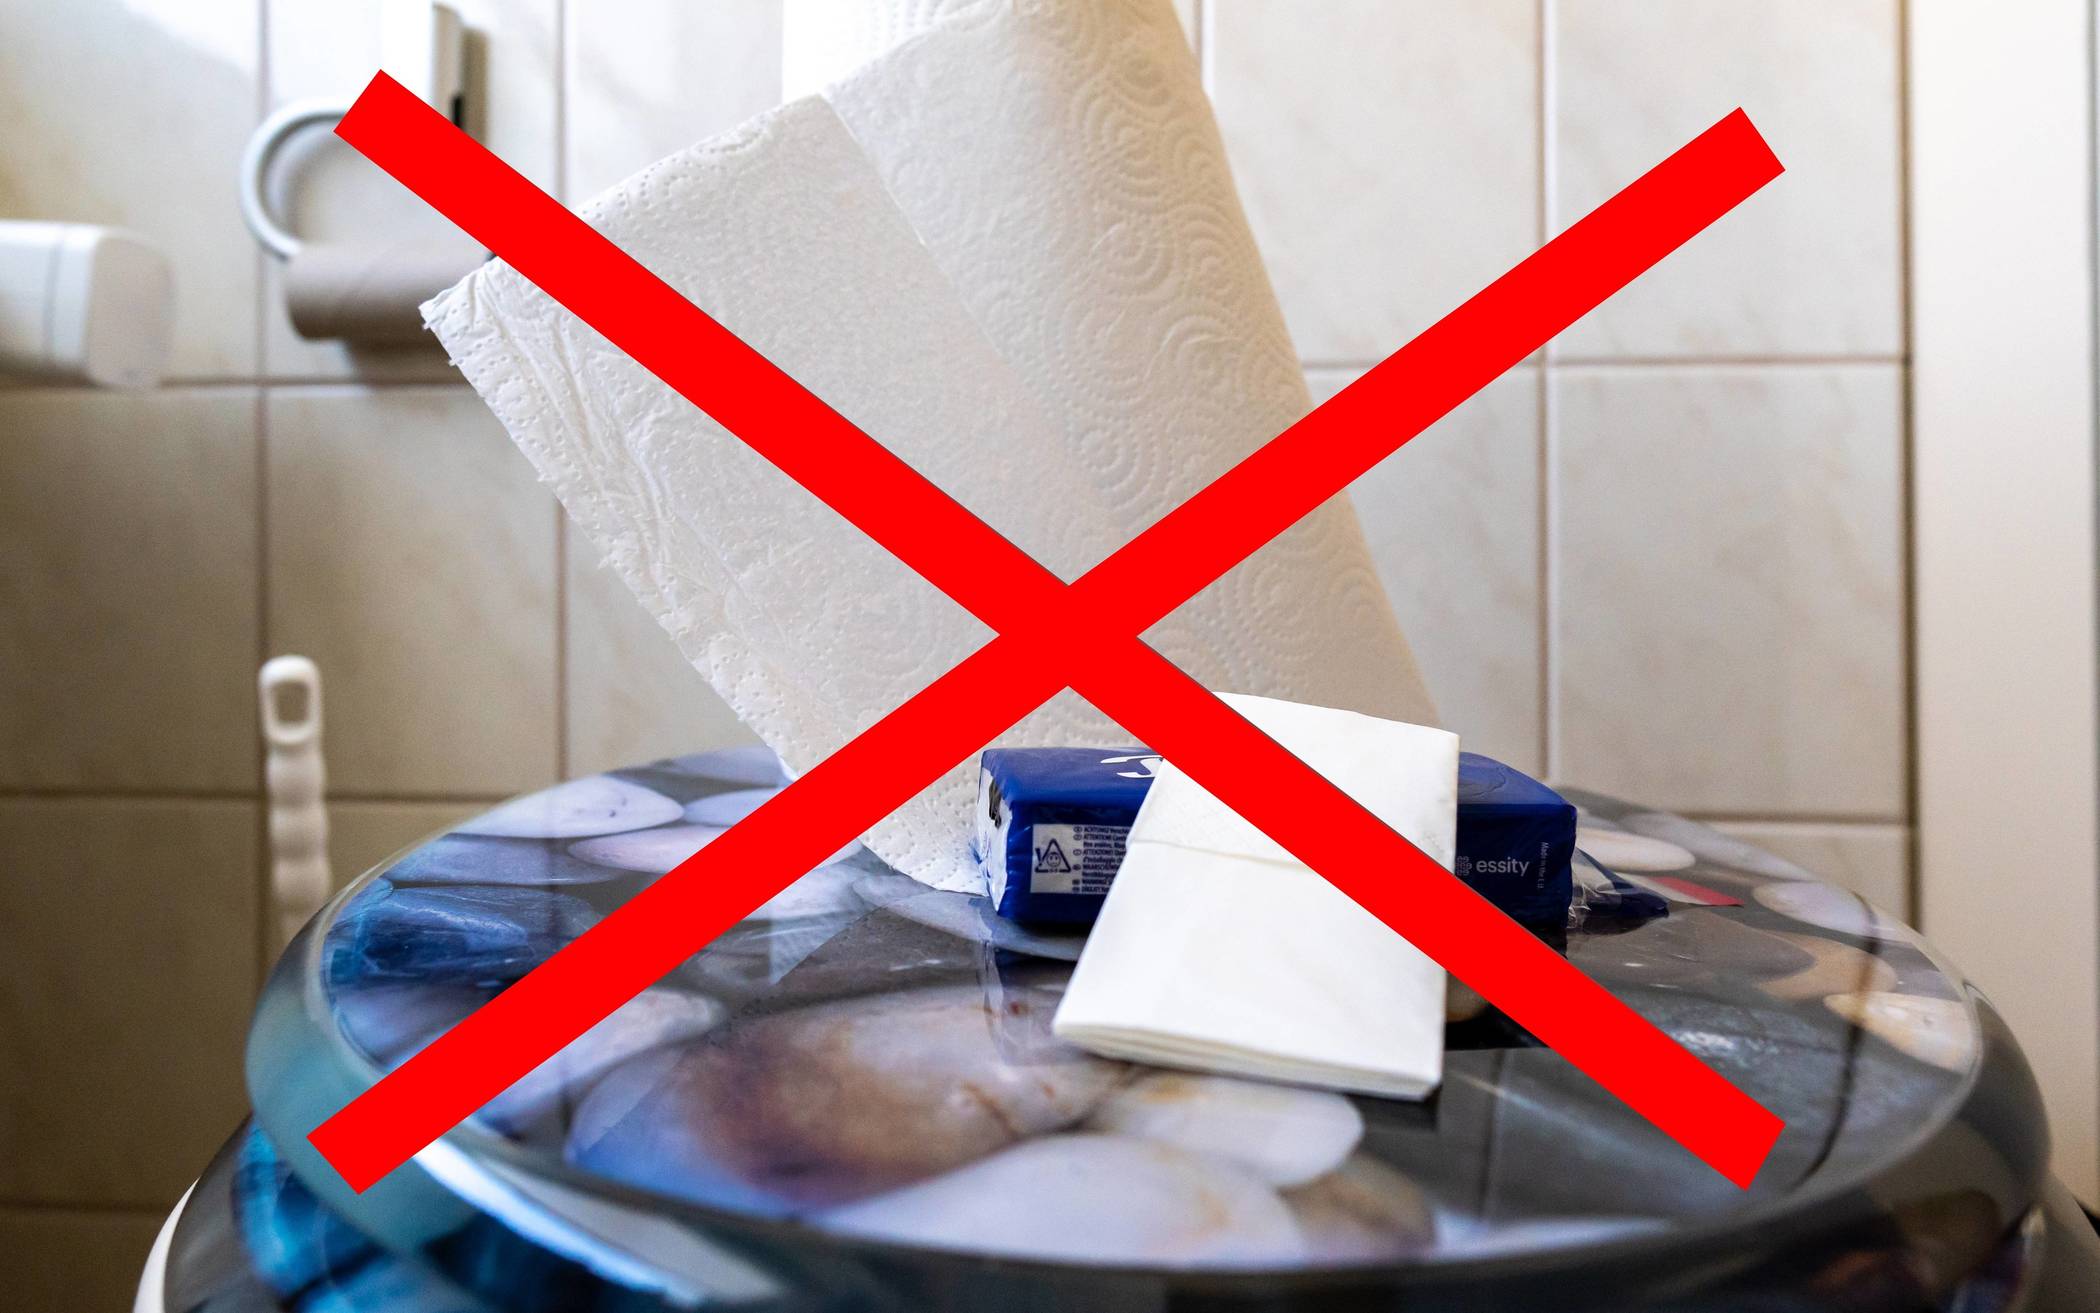  Feuchttücher und Küchenrolle gehören nicht in die Toilette, sondern in den Mülleimer.  